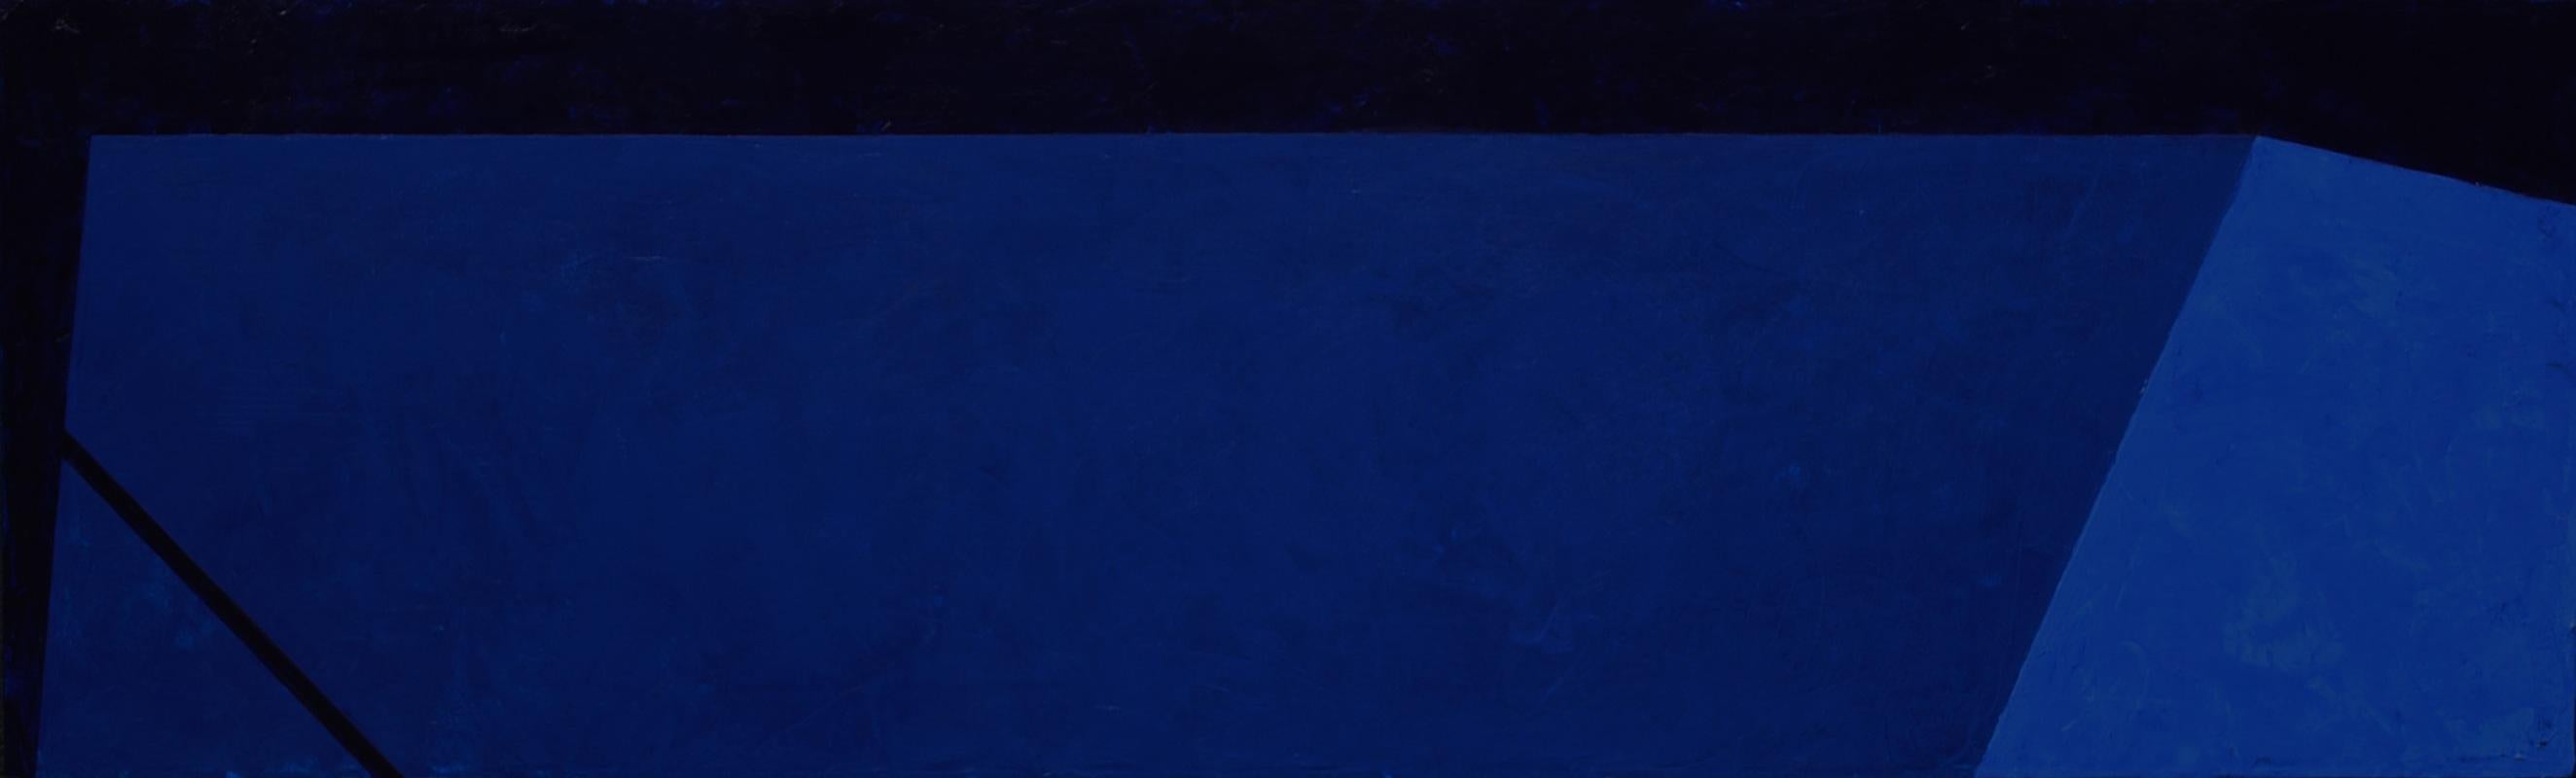 Macyn Bolt, Dark Pool II, acrylic on canvas, Minimalist, 18 x 60, 2018 For Sale 1